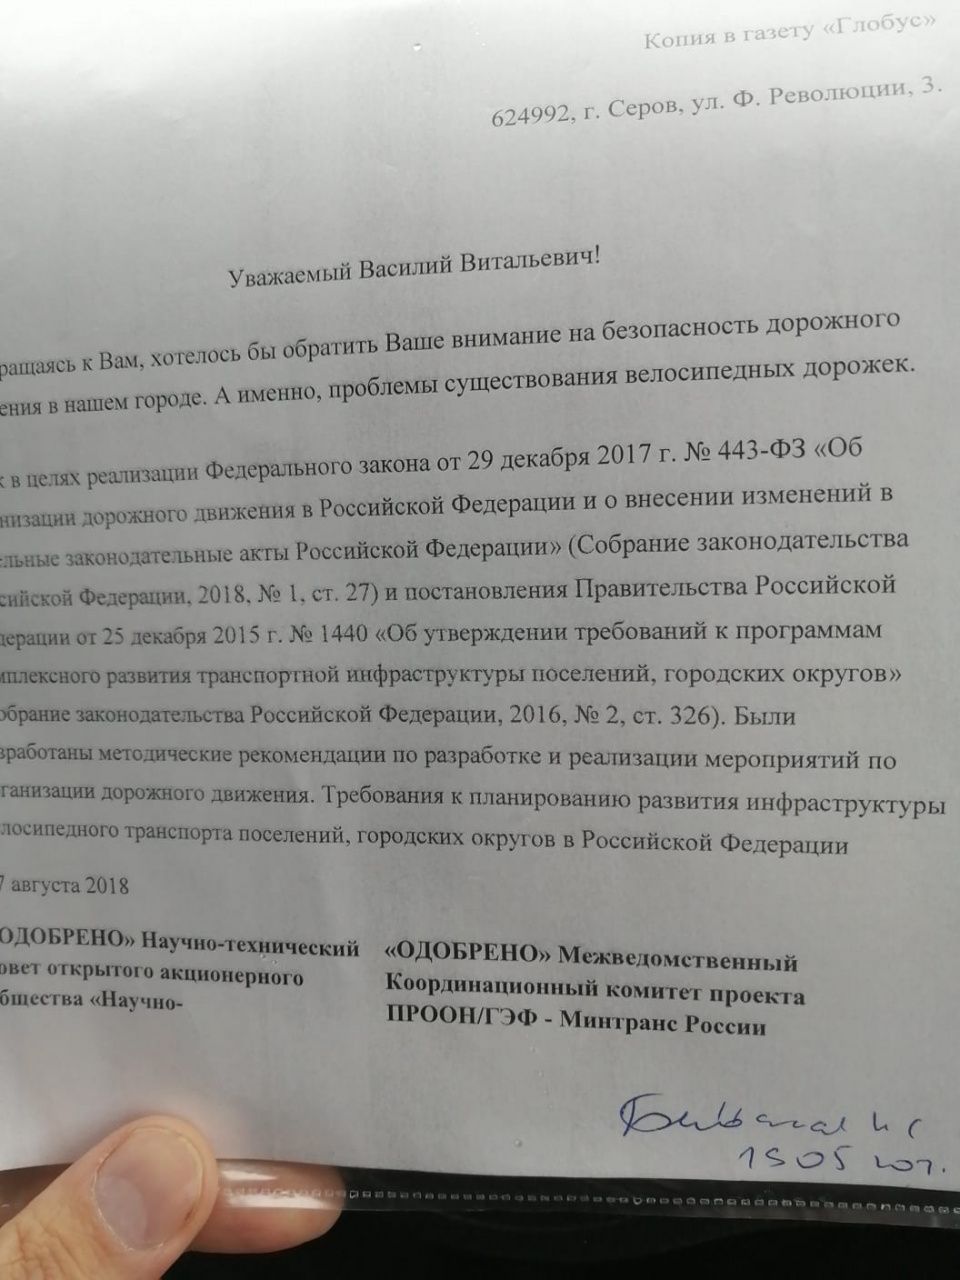 Члены ЛДПР обратились к мэру Серова с письмом от велосипедистов. Просят обратить внимание на отсутствие велодорожек